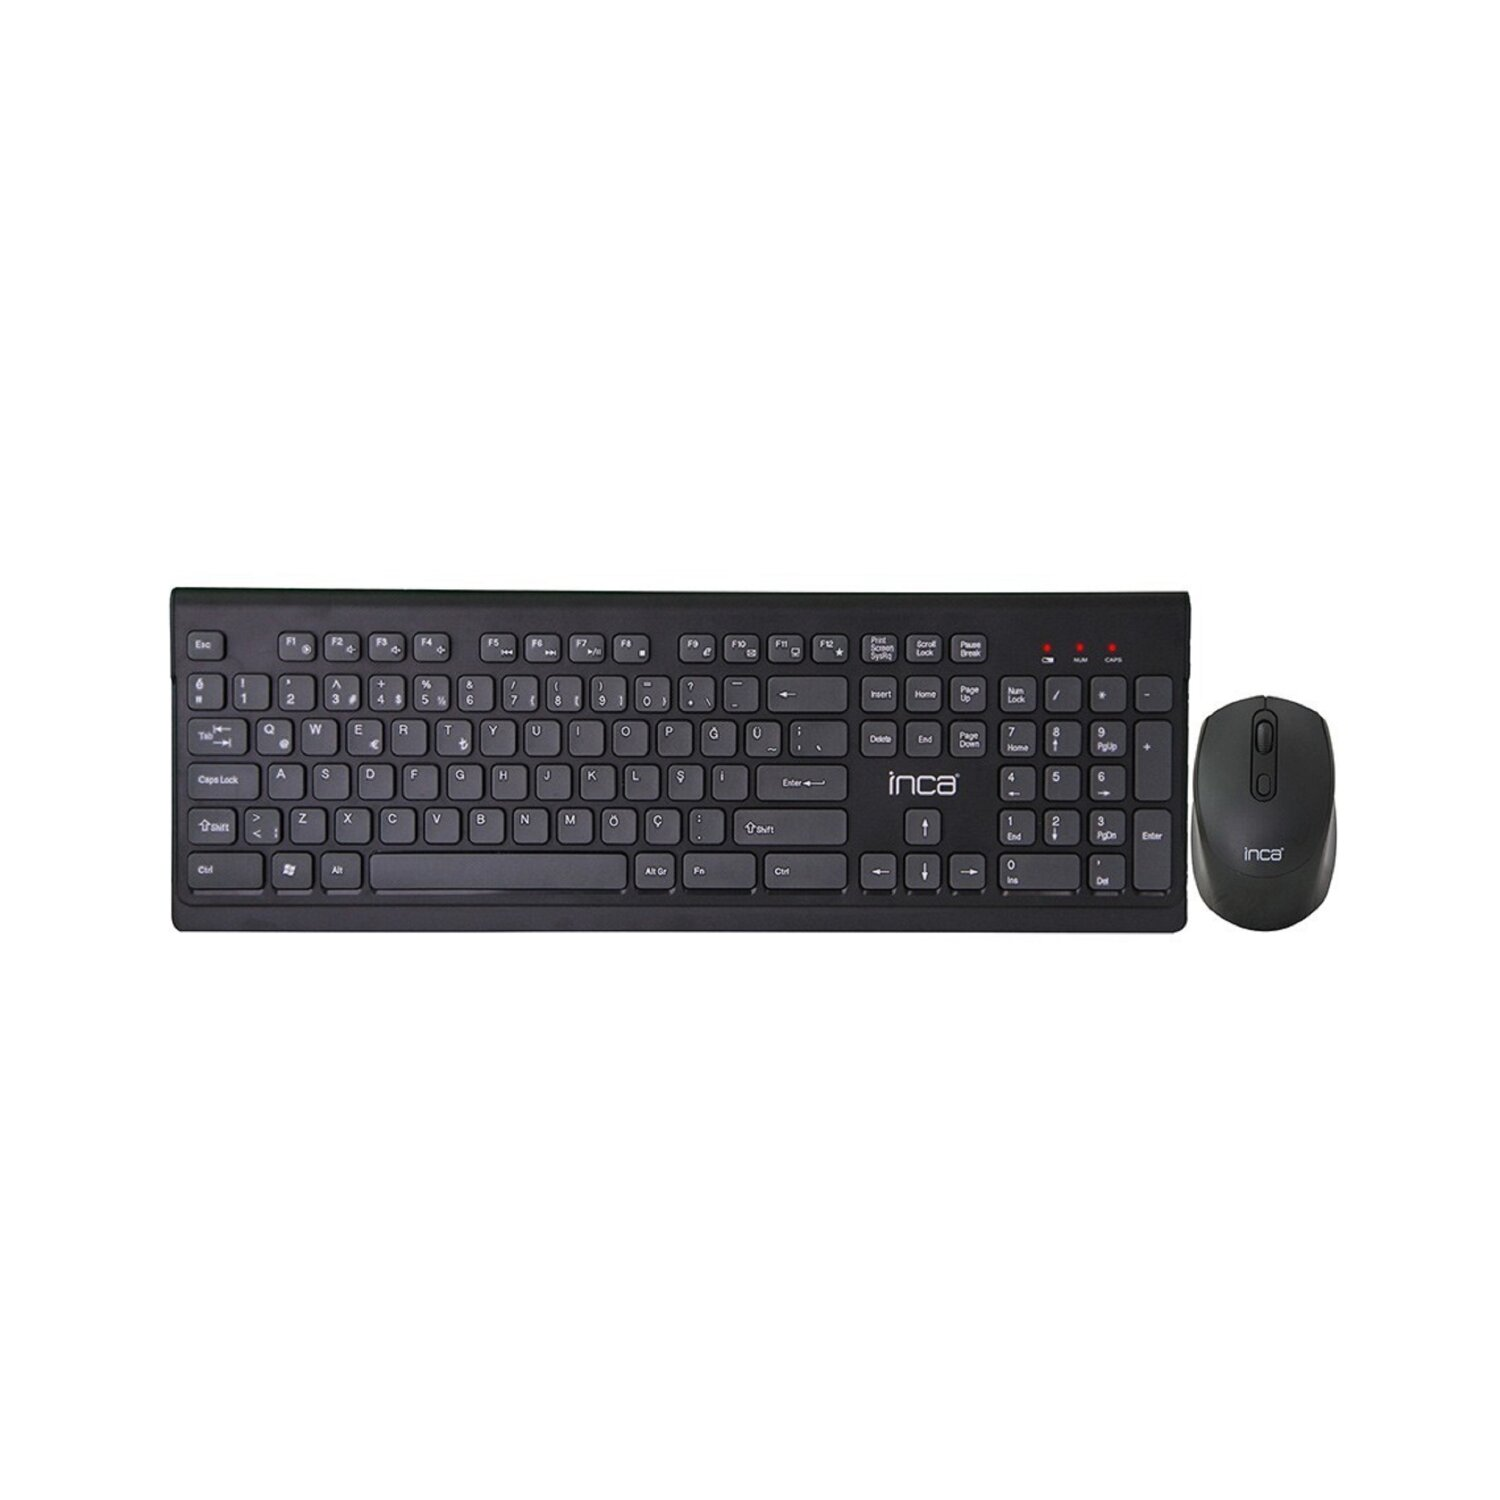 INCA IWS-519, Maus-Set Tastatur &